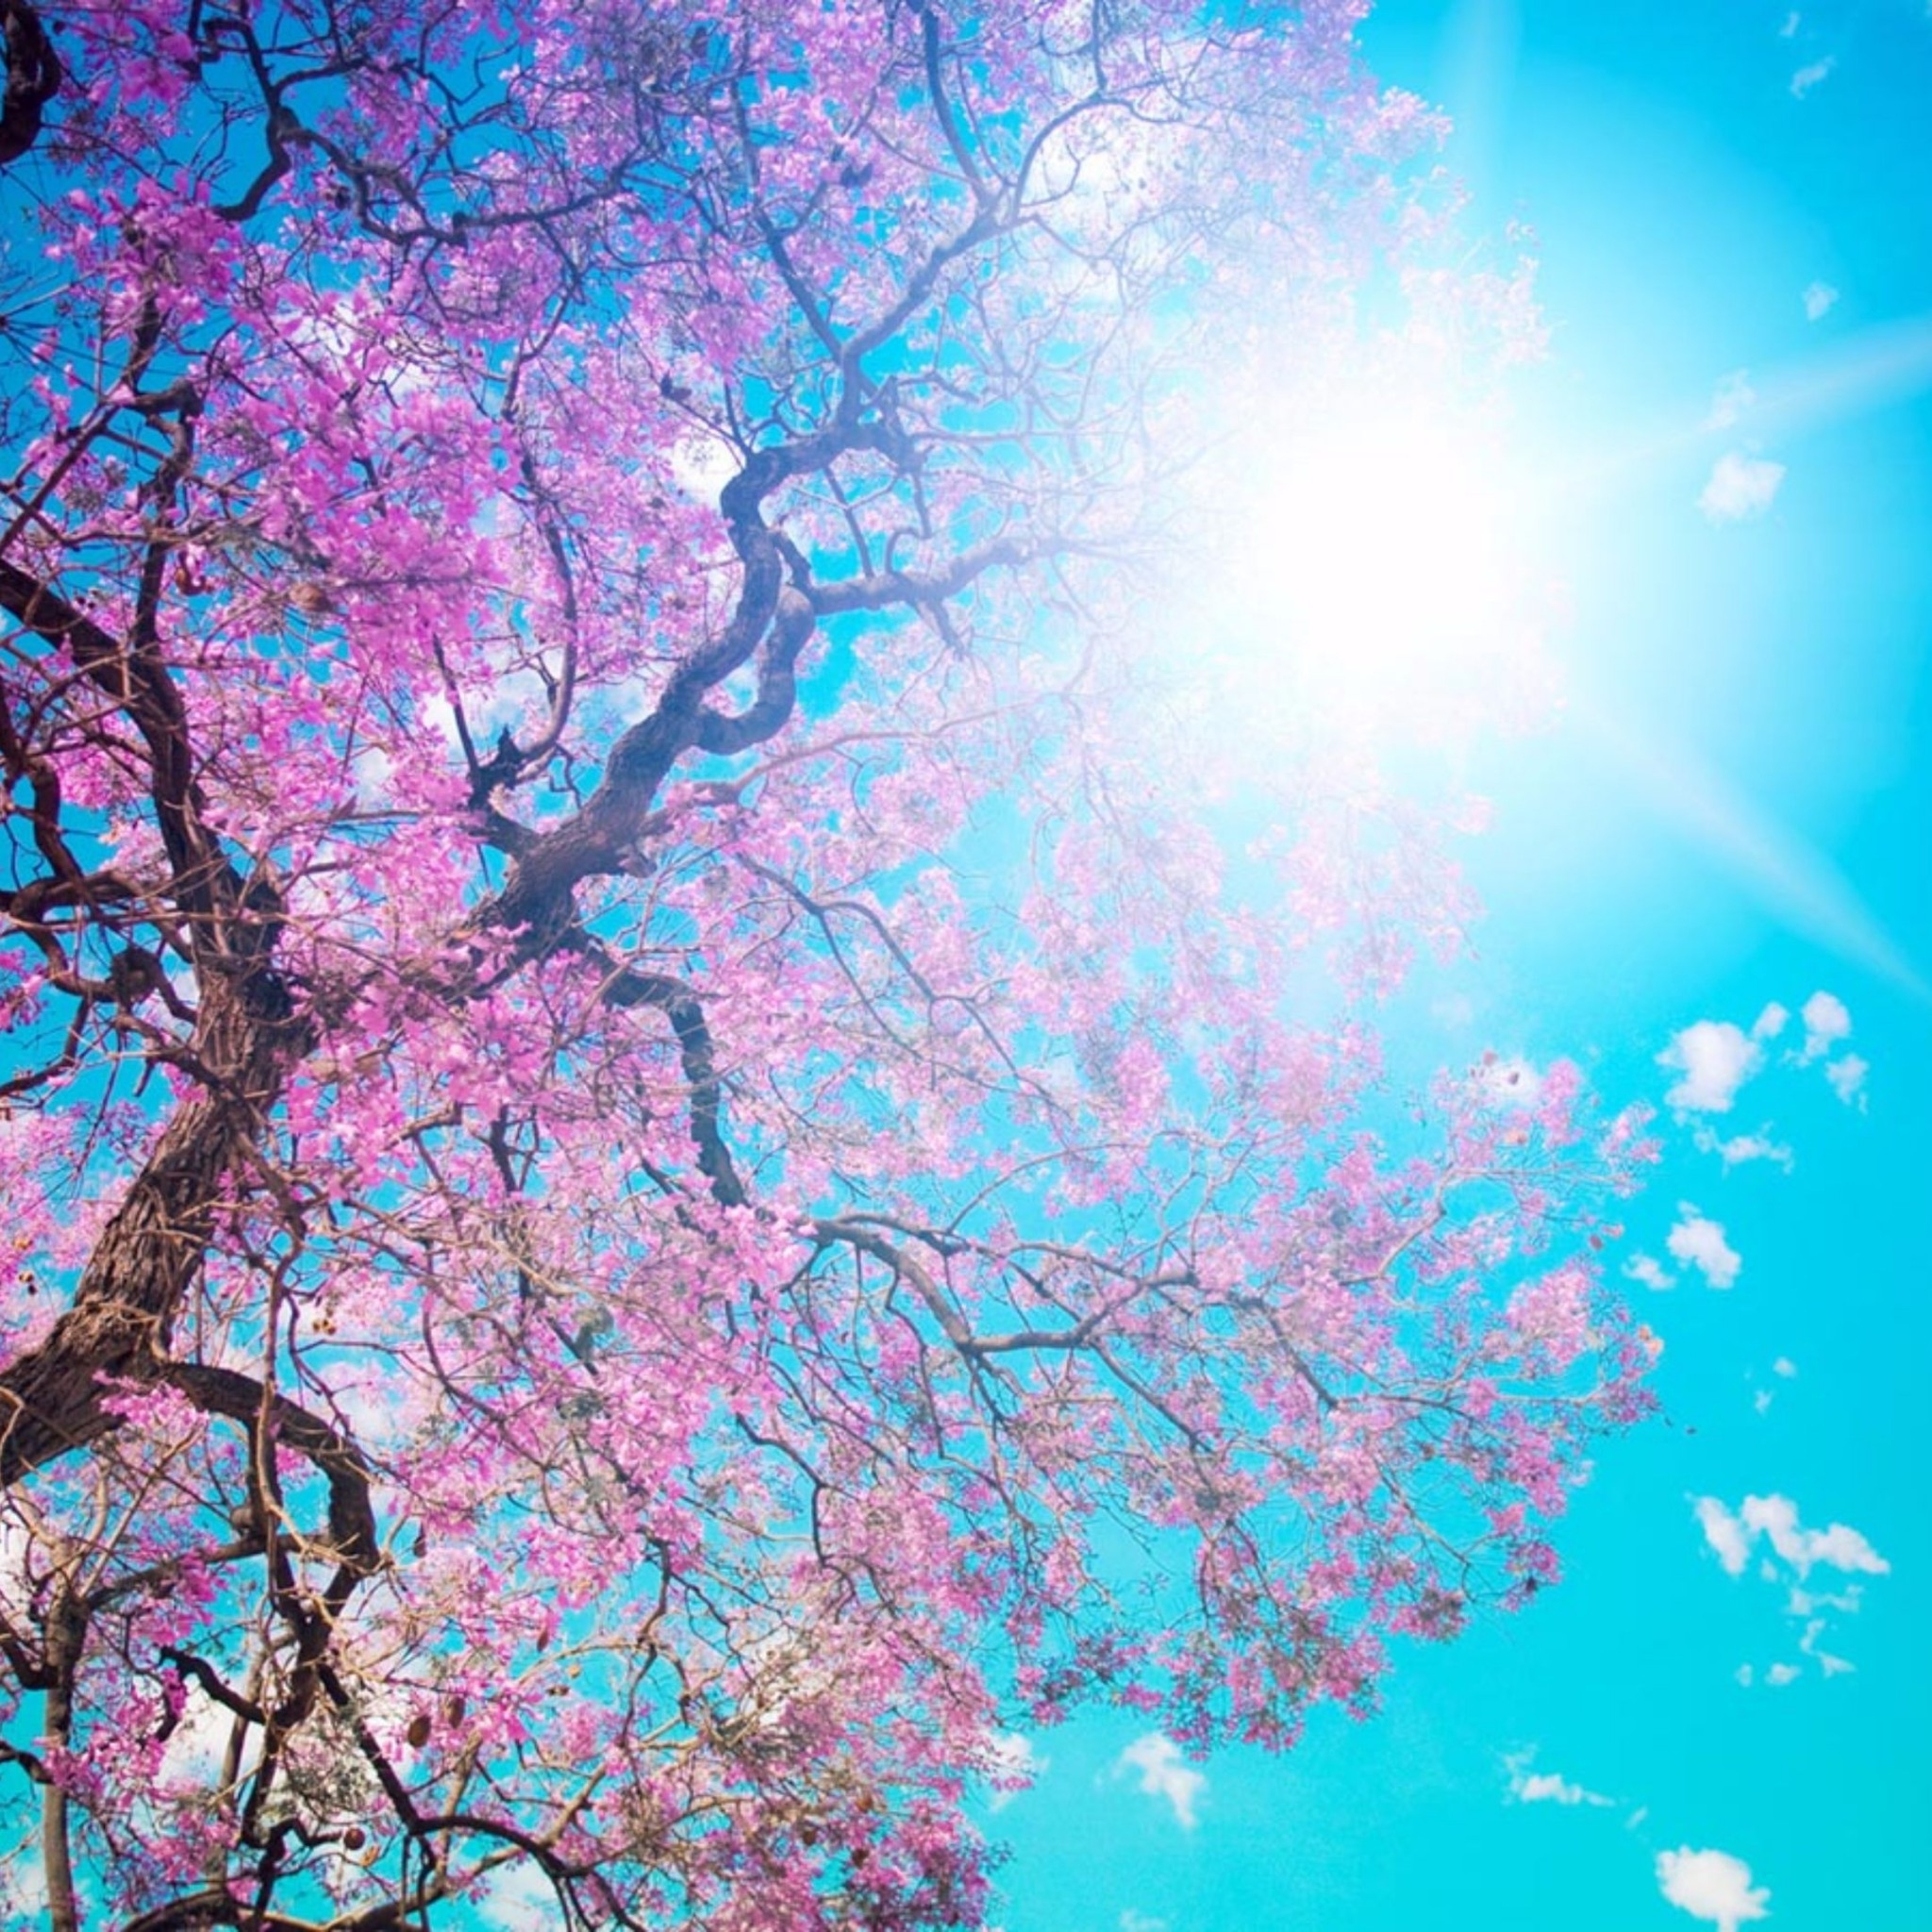 ipad fondos de pantalla hd,azul,cielo,rosado,florecer,flor de cerezo